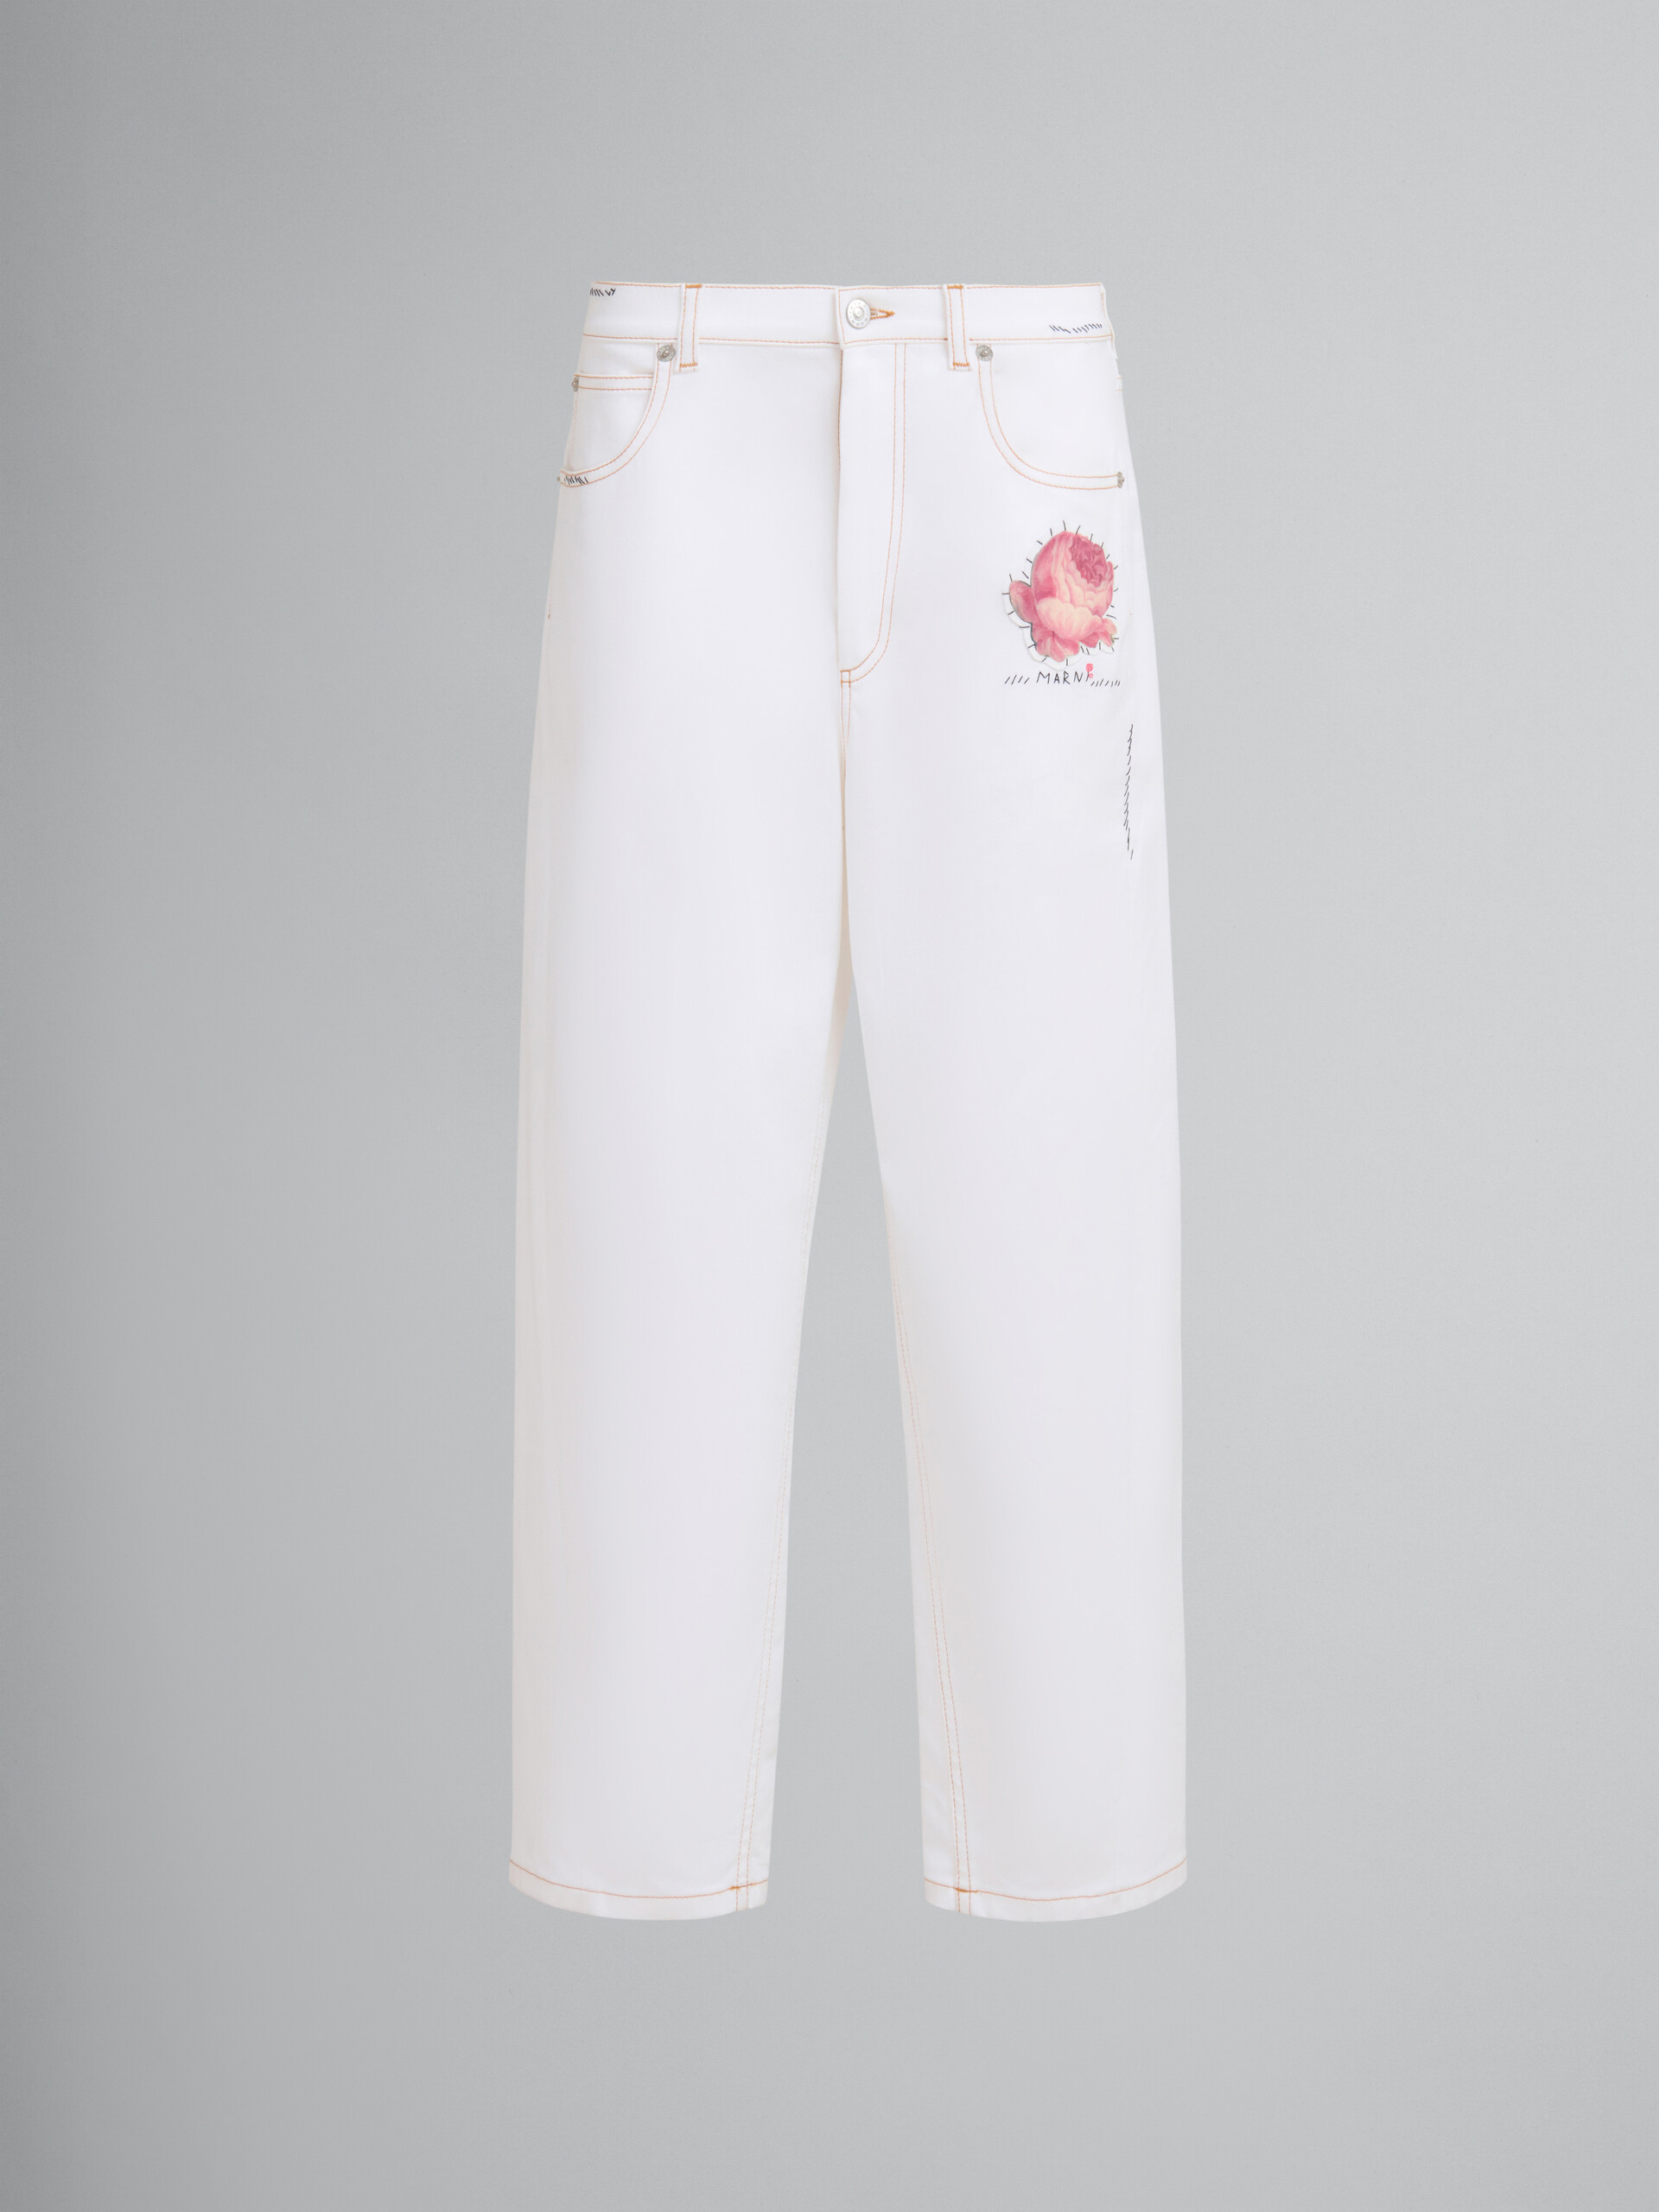 Pantalón de denim blanco con parches en forma de flor - Pantalones - Image 1